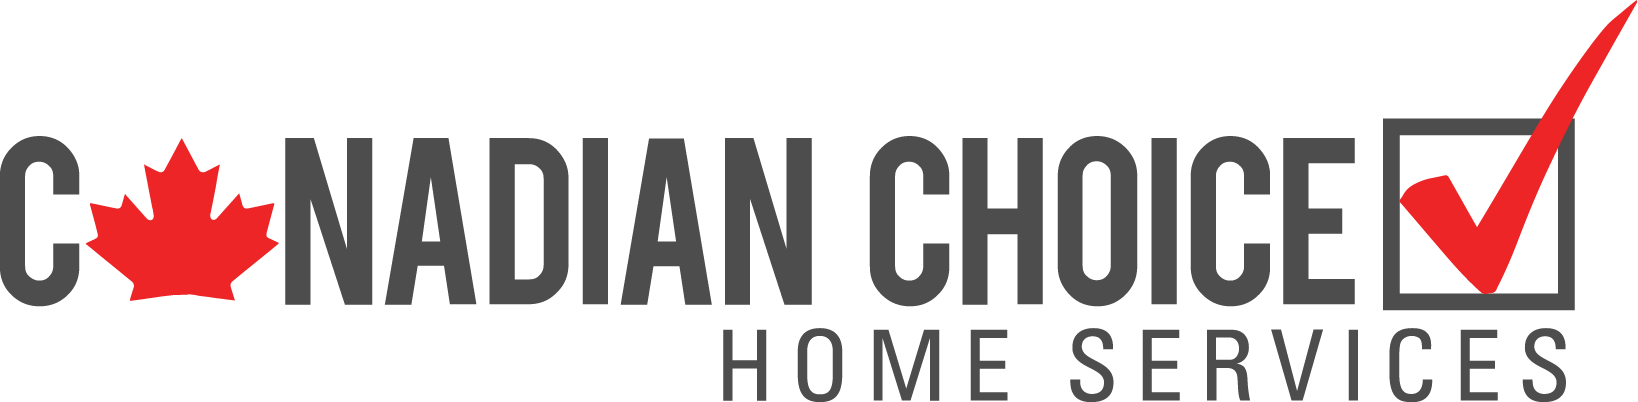 Canadian Choice Logo by Milaniz